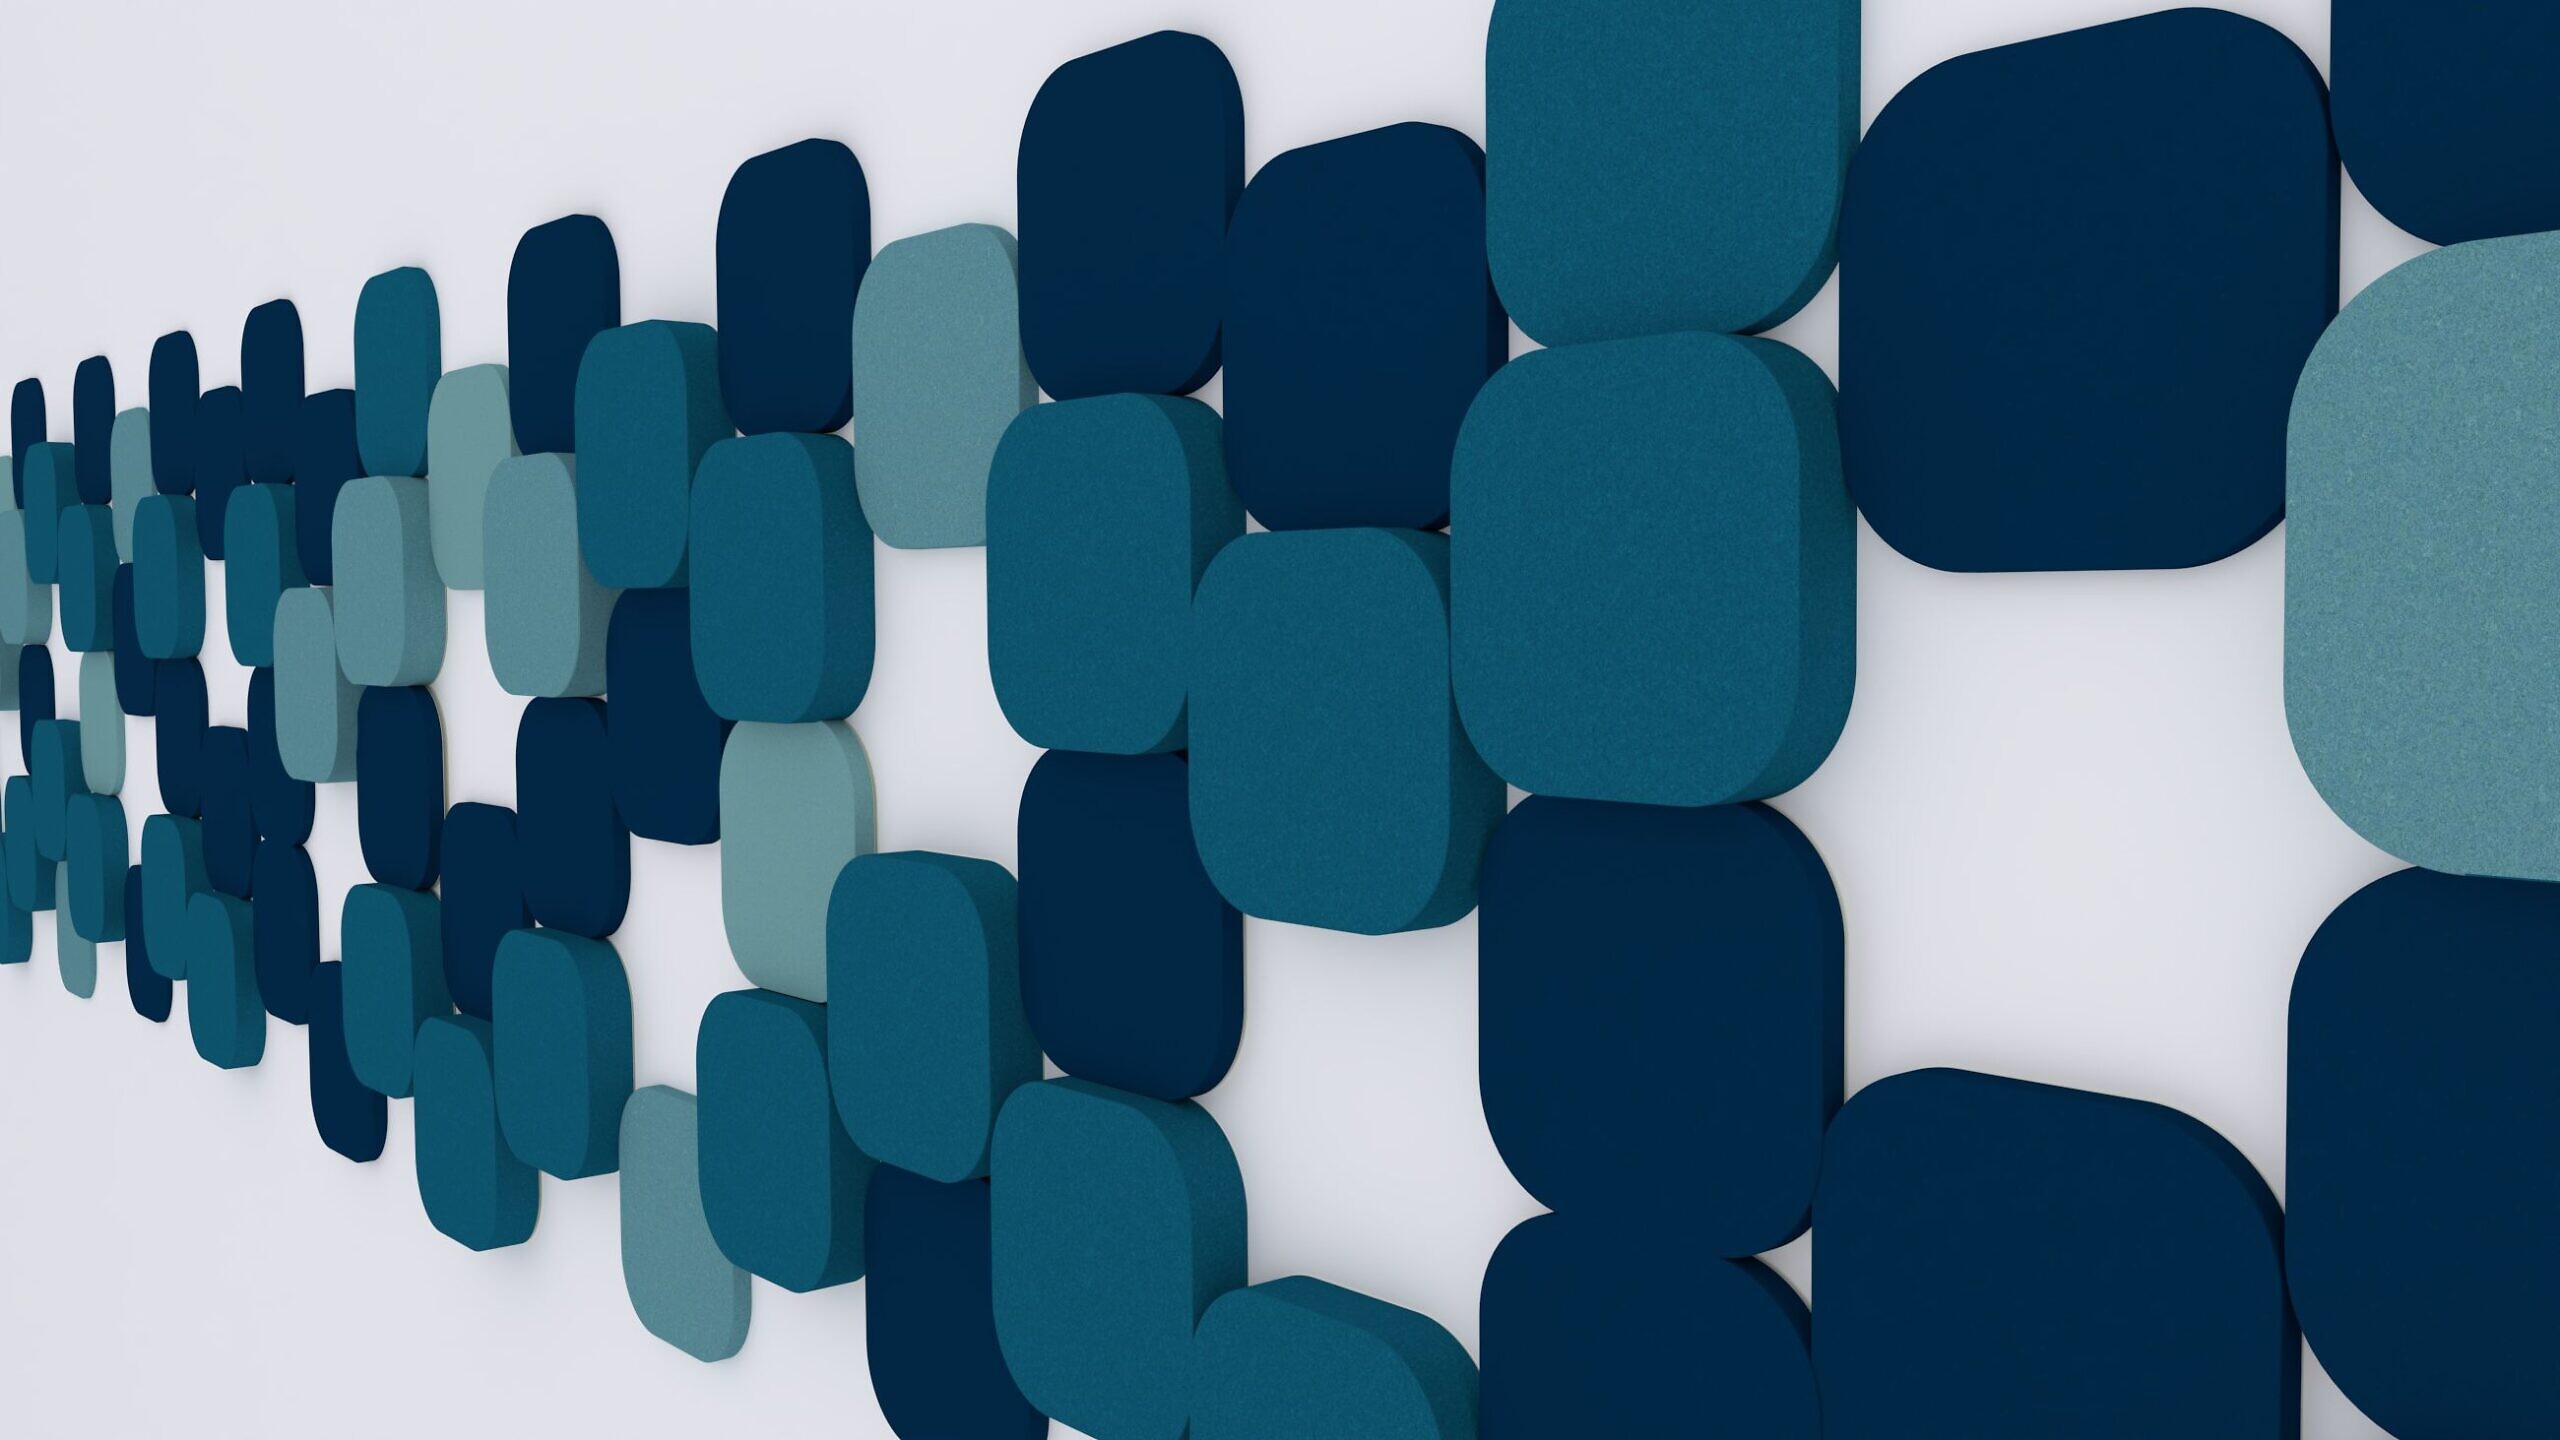 Boczny widok panelu akustycznego Fluffo o wzorze S Cut, złożonego z niebieskich i miętowych elementów